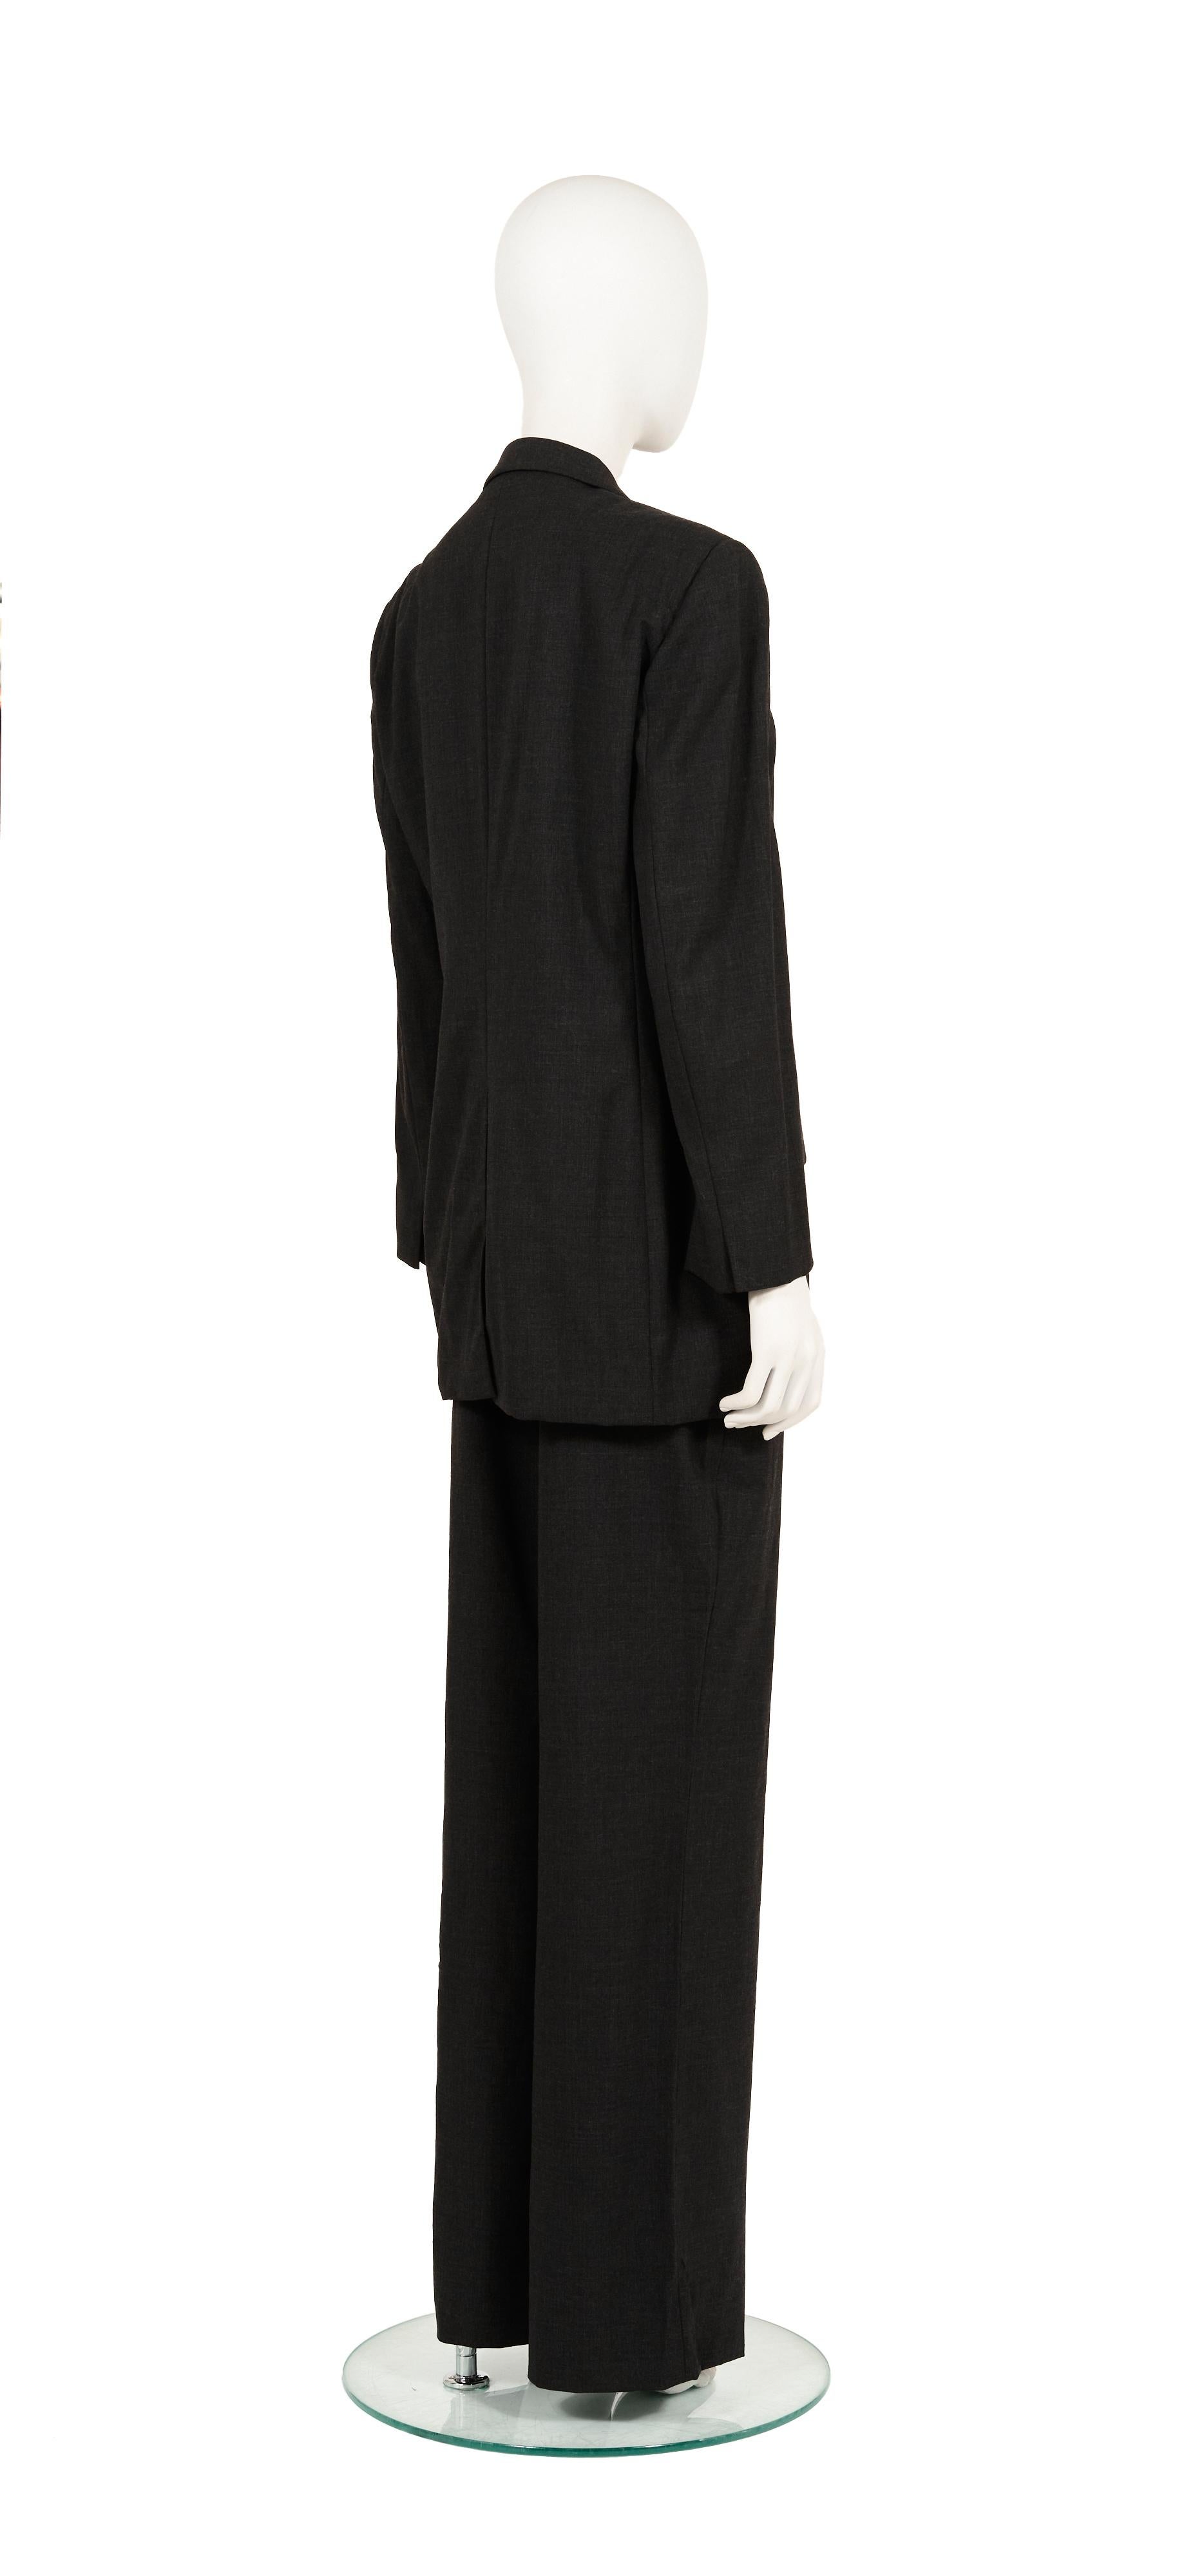 - Gucci von Tom Ford
- Verkauft von Gold Palms Vintage 
- Herbst-Winter-Kollektion 1997
- Dunkelgrauer Anzug (Blazer + Hose) 
- Übergrößen-Passform 
- Unsichtbare Knöpfe innen (Jacke)
- Weite Hosenbeine
- Größe: IT 44